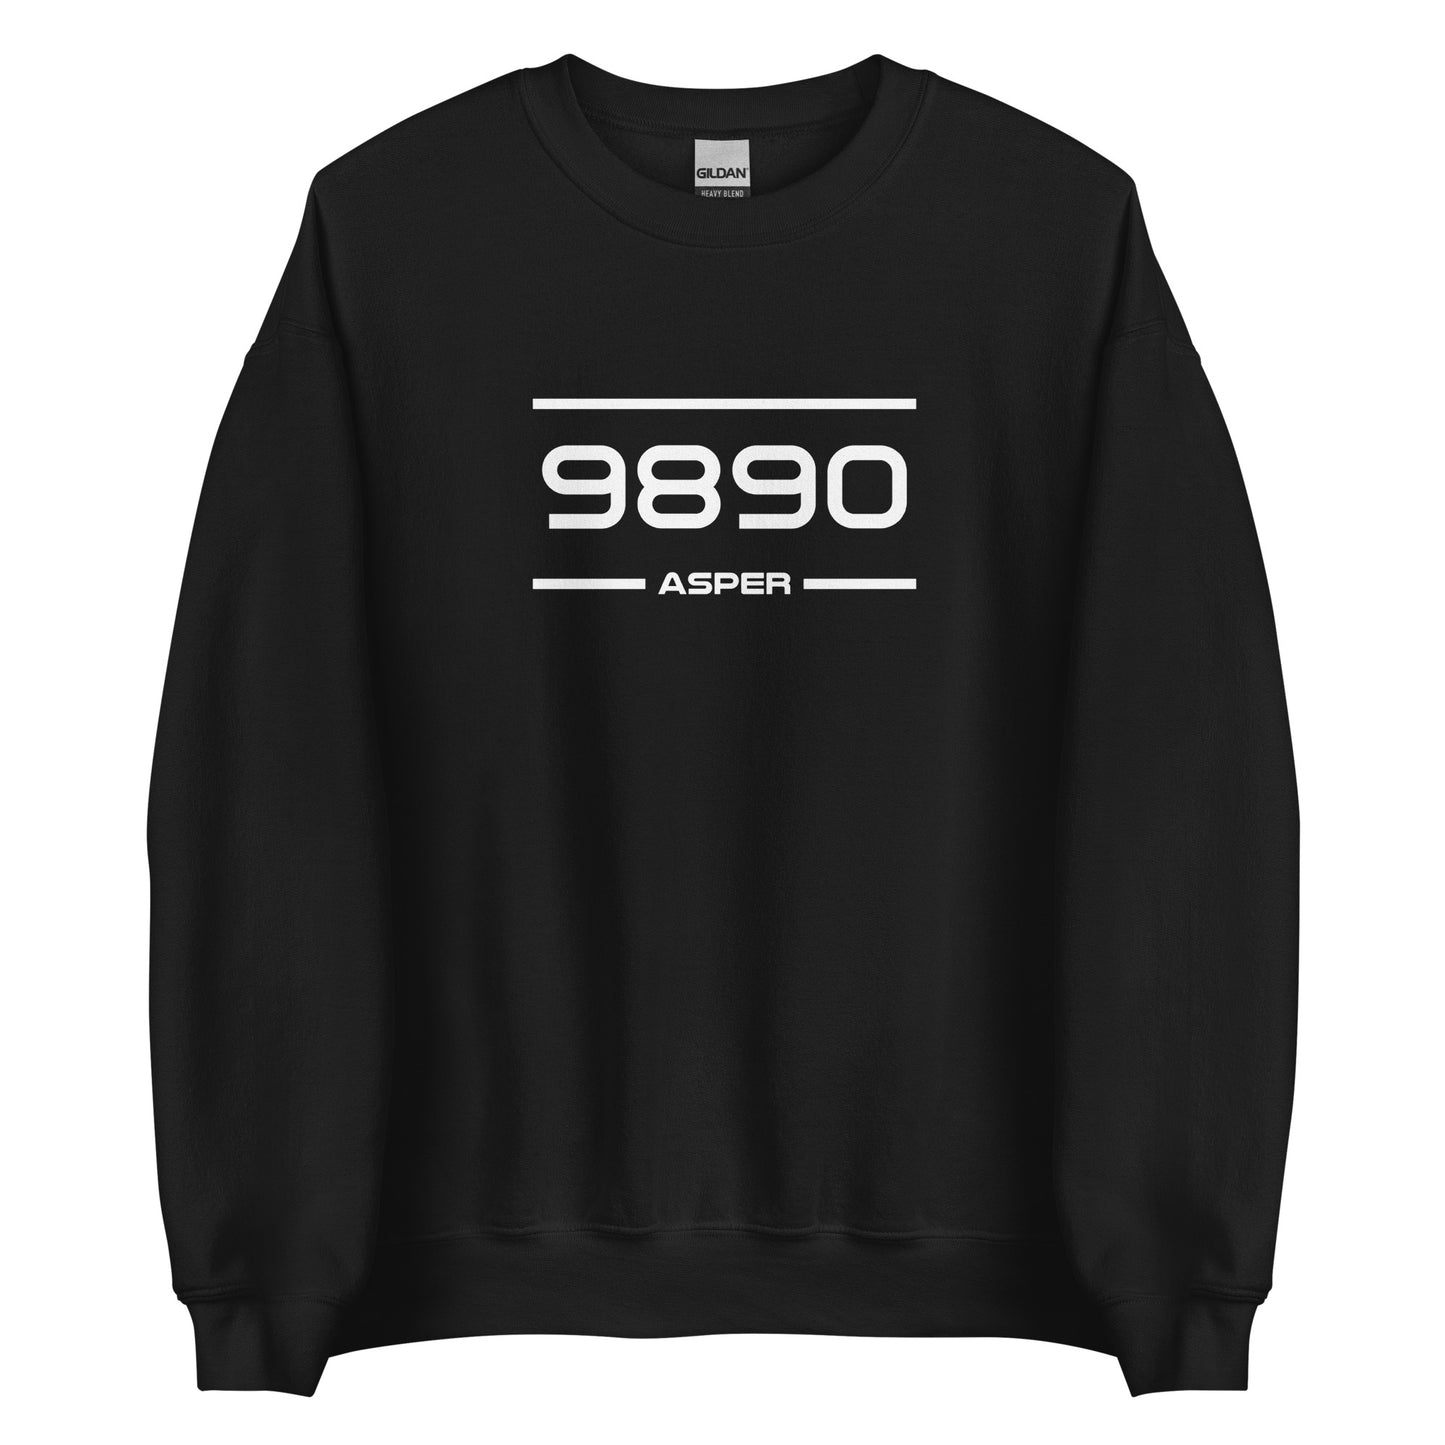 Sweater - 9890 - Asper (M/V)